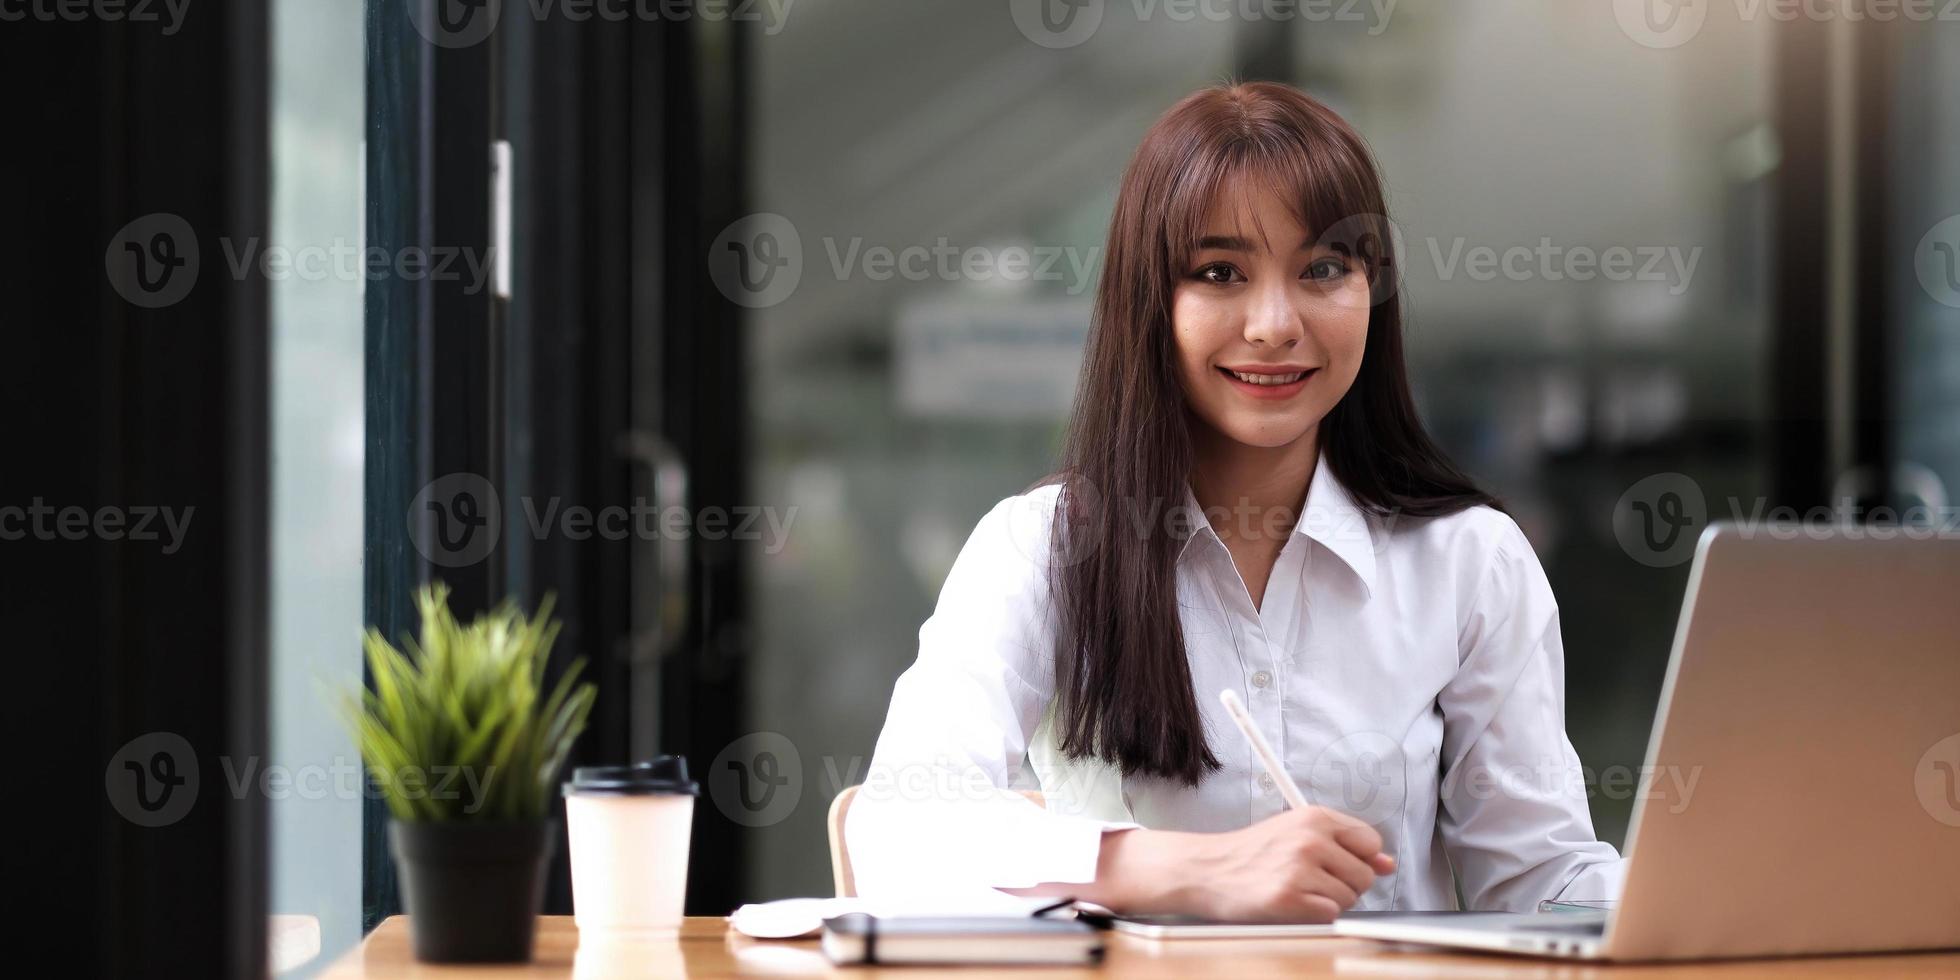 retrato de uma bela jovem estudando enquanto está sentada à mesa foto